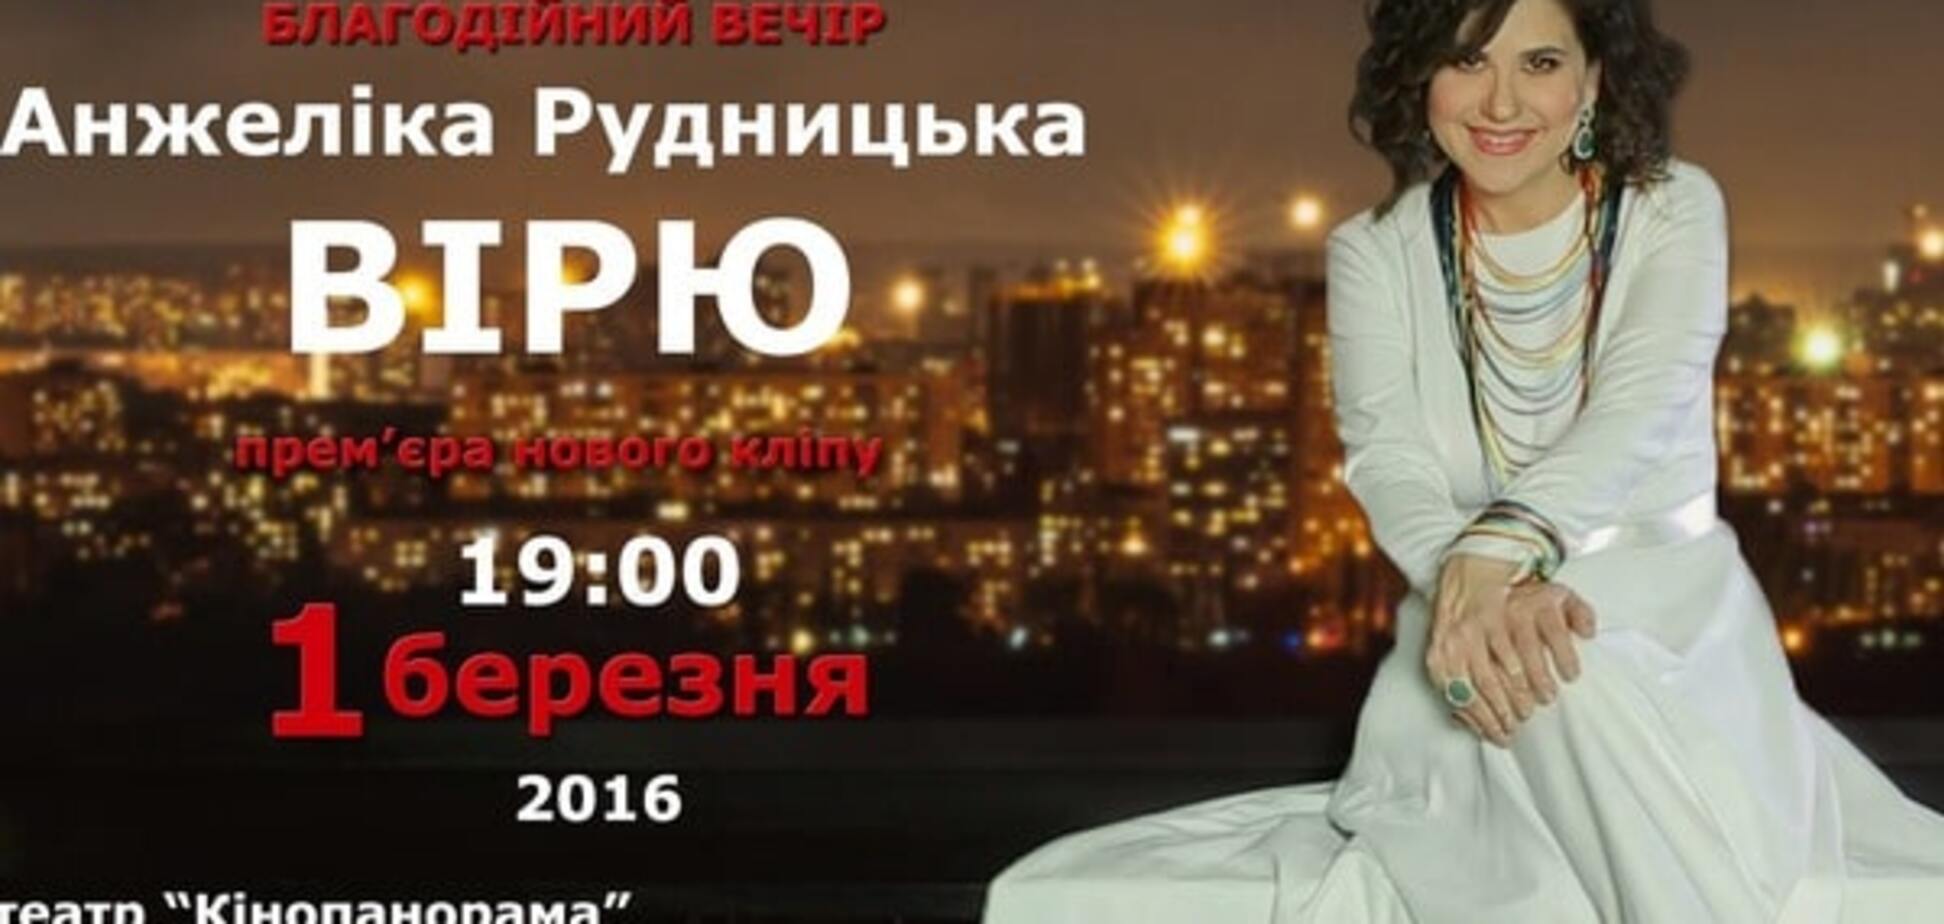 Верю. Жду. Люблю: Рудницкая проведет благотворительный вечер в помощь раненому 'киборгу'